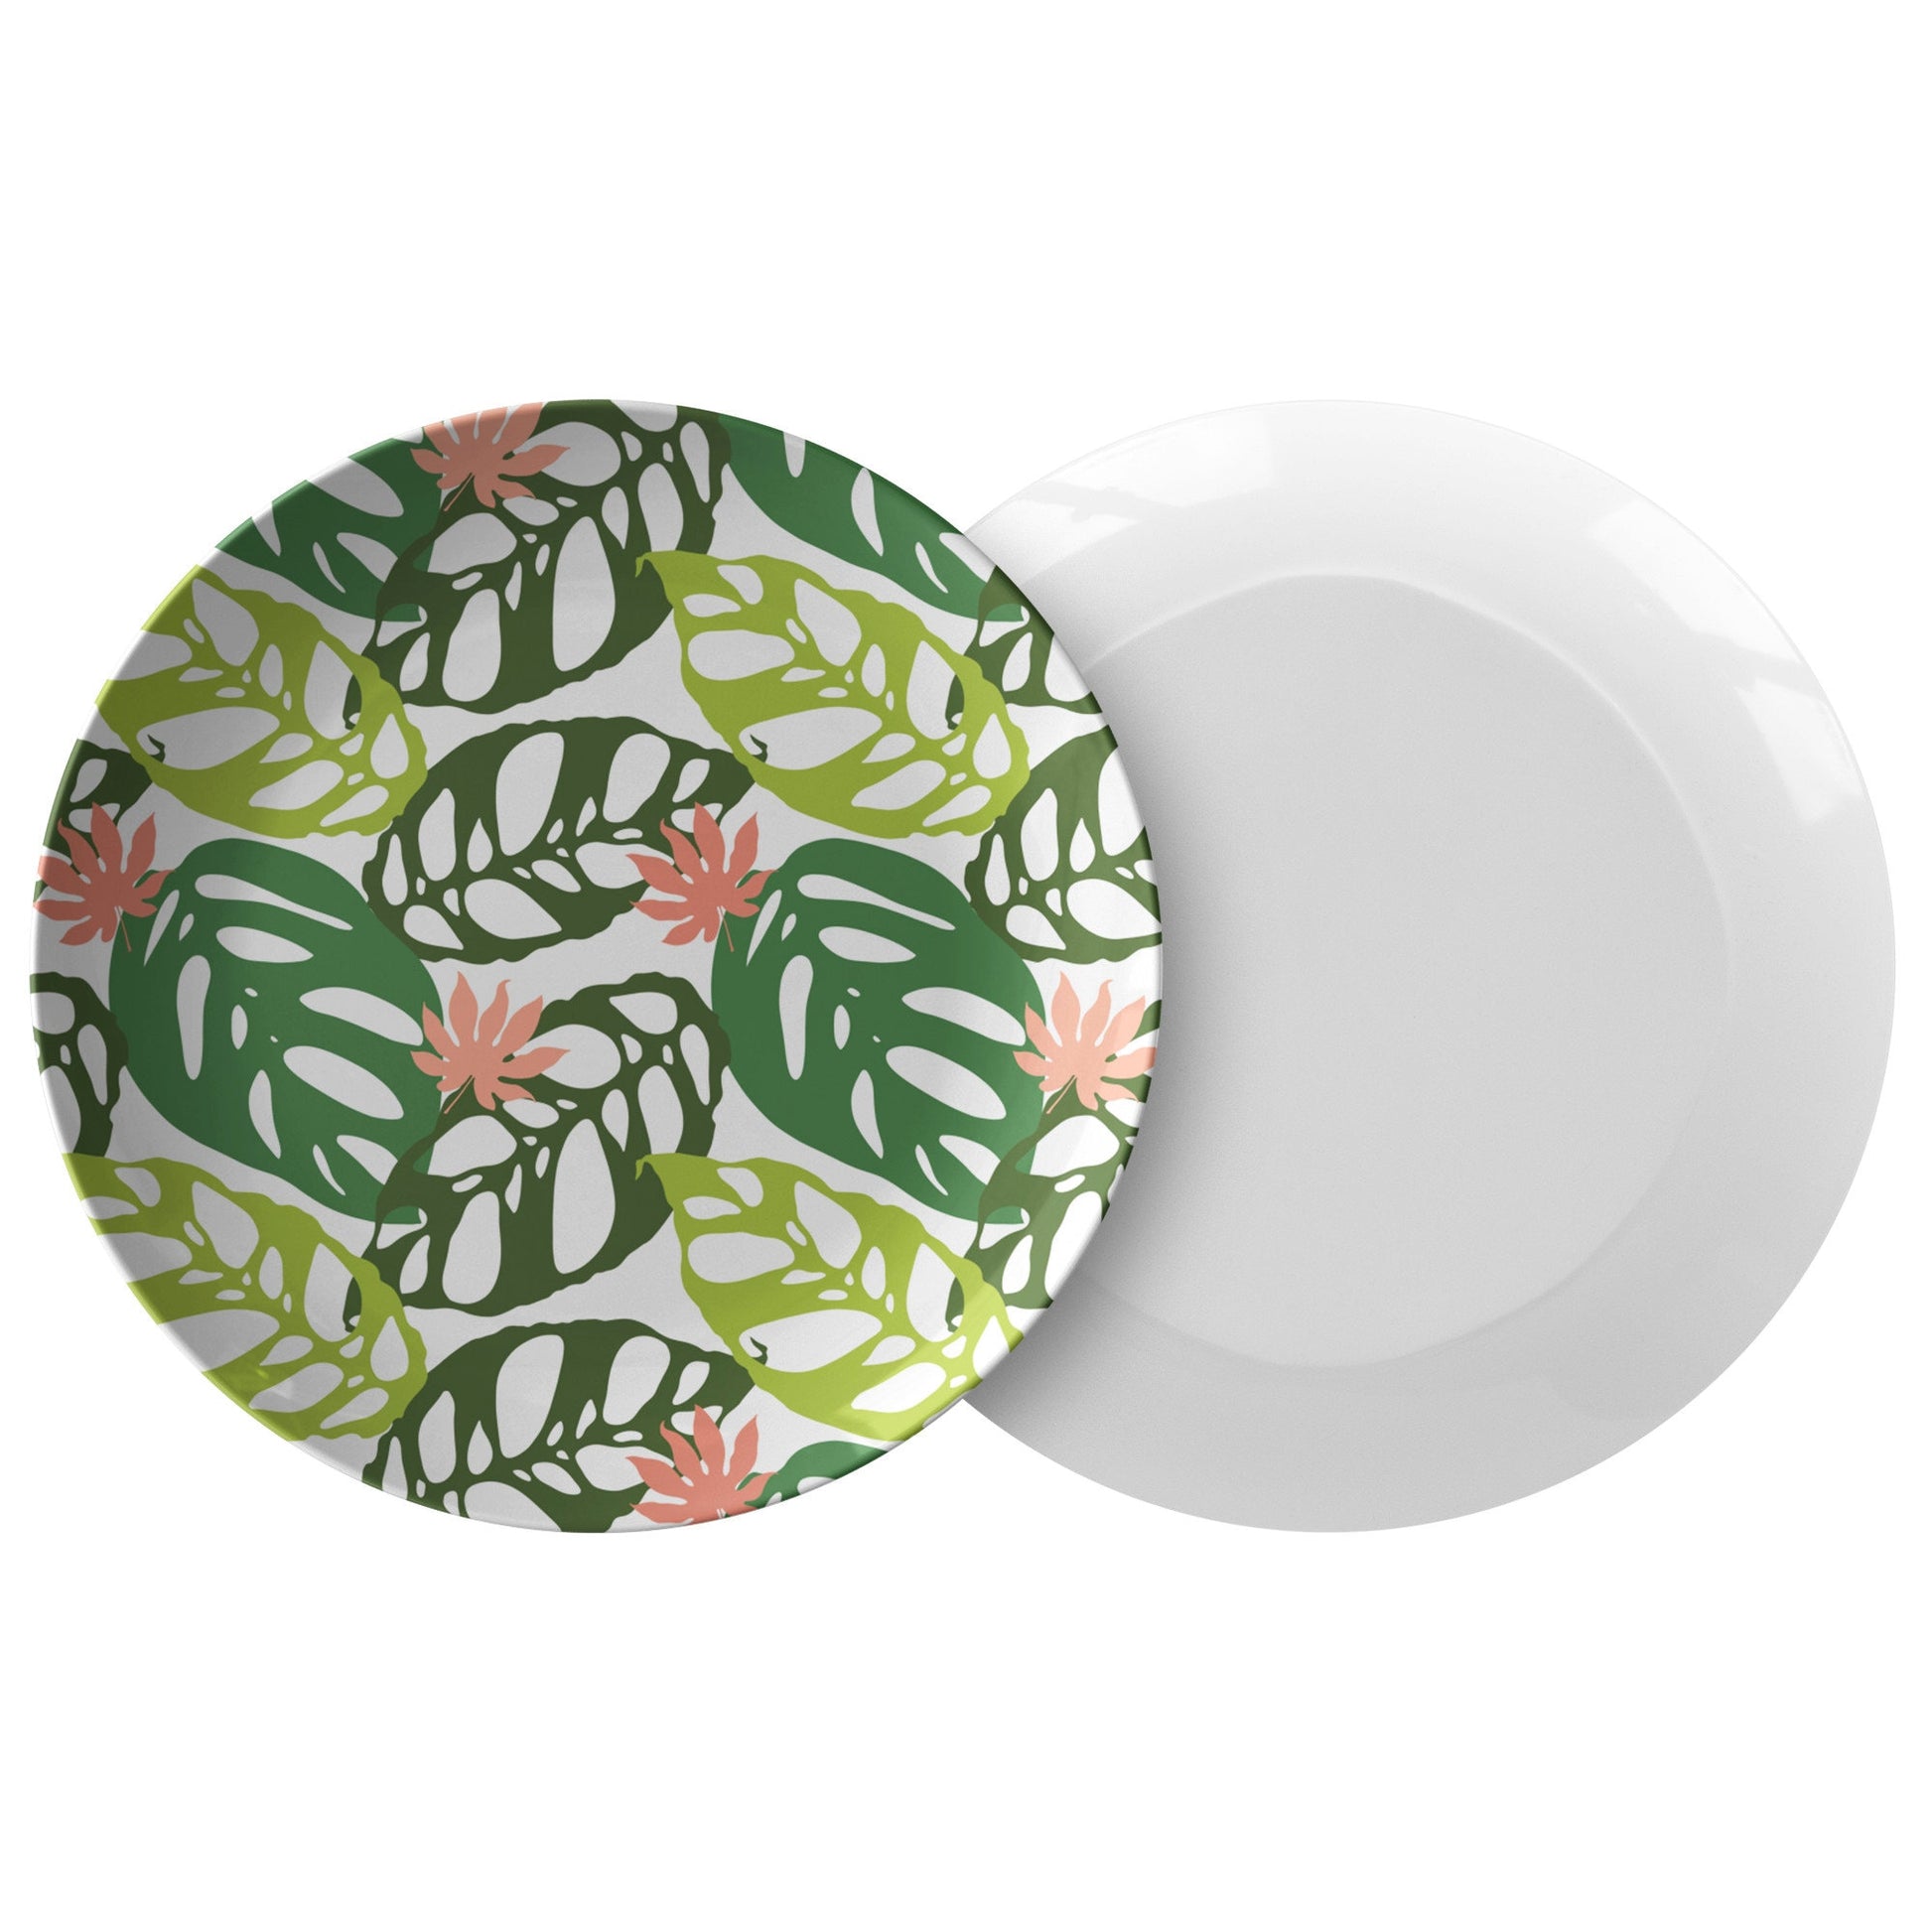 Tropical Palm Leaf Plate Set, Alyssa Reuven Original Design 